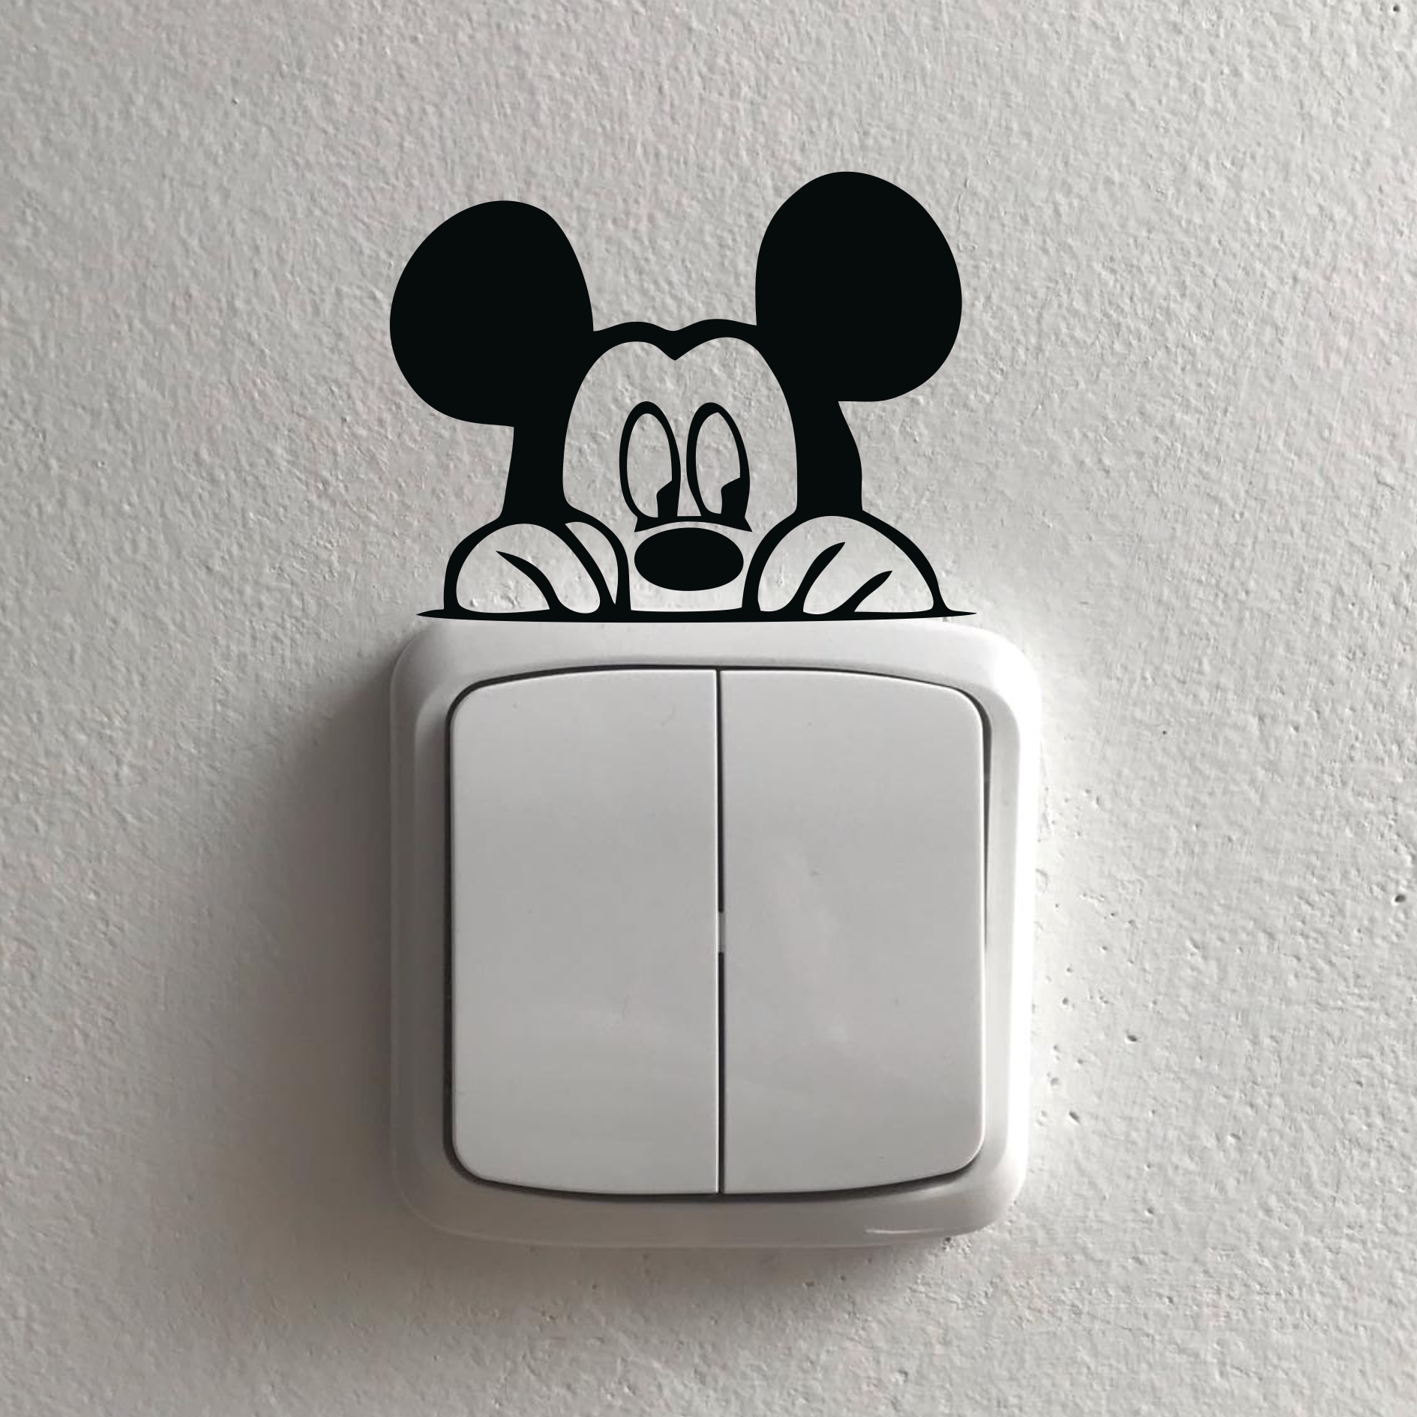 Mickey mouse samolepka okolo vypínače